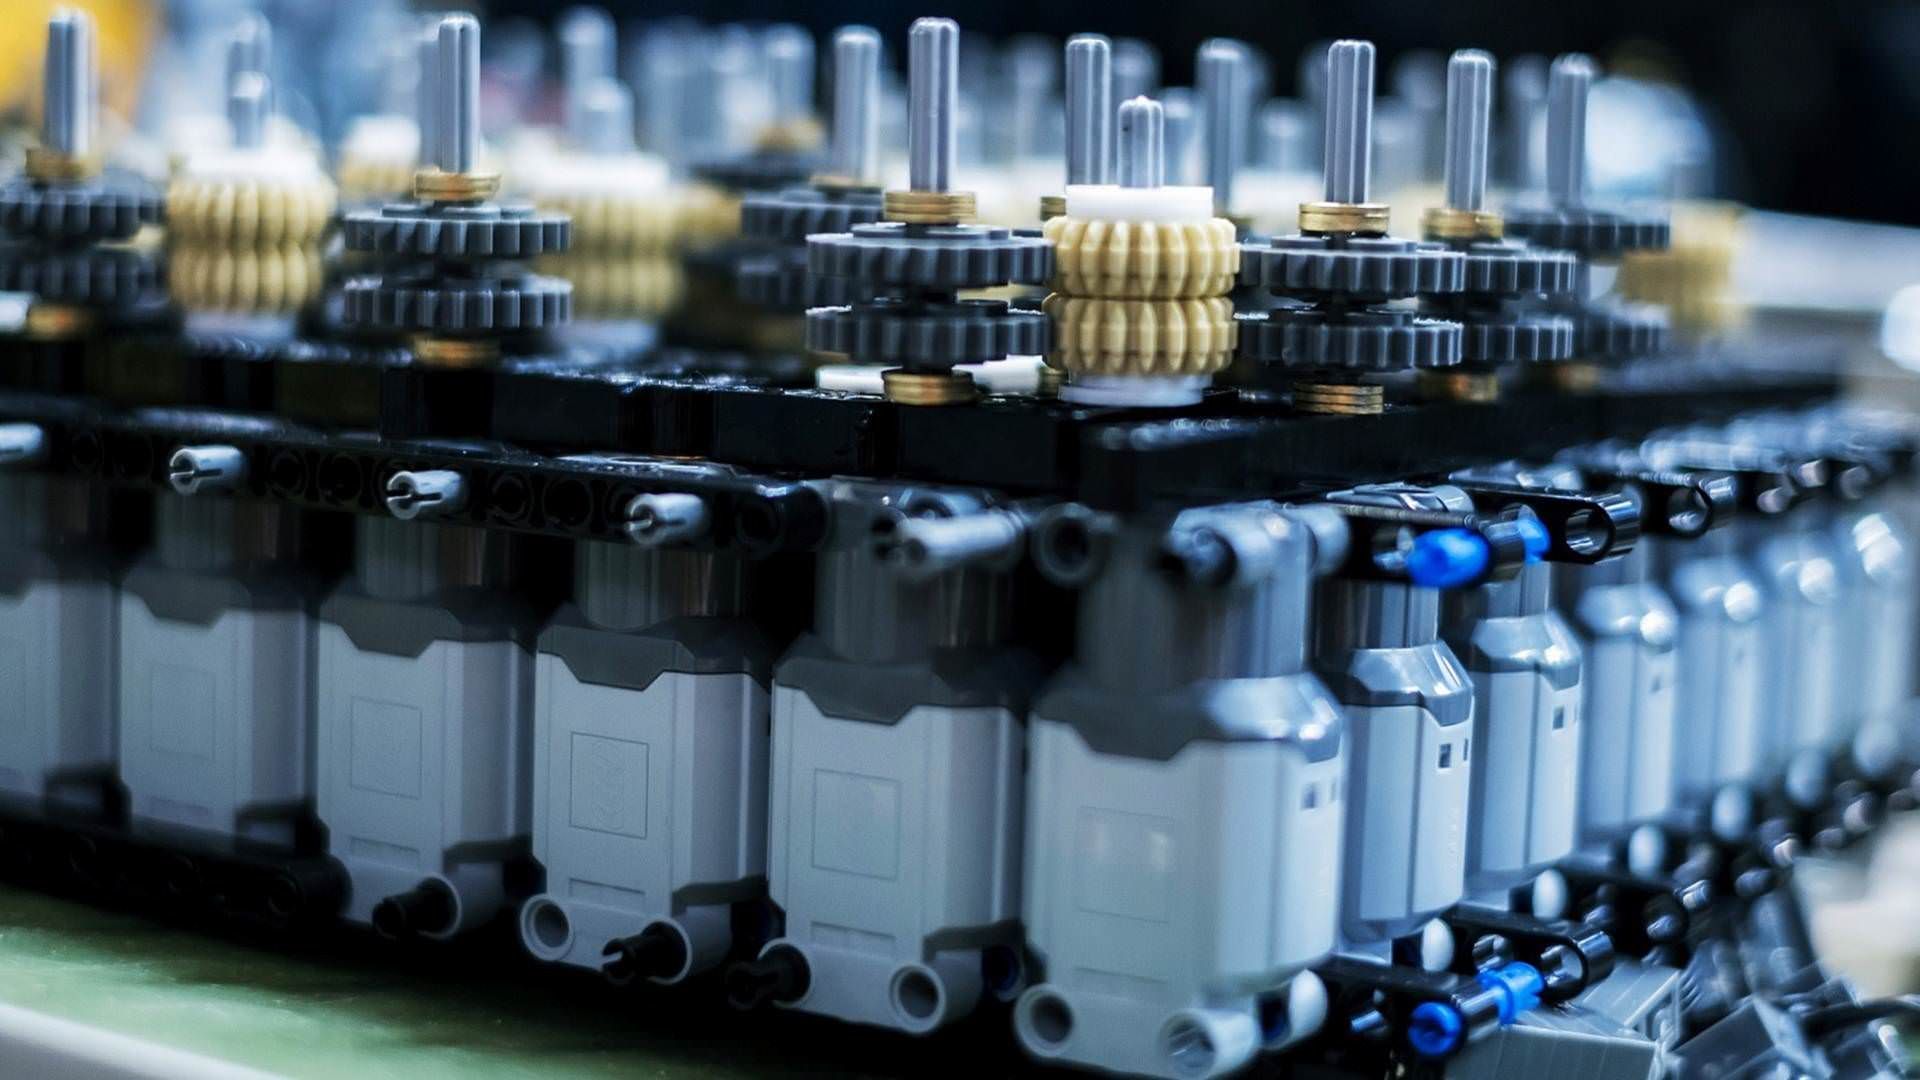 بوگاتی شیرون لگو / Bugatti Chiron Lego